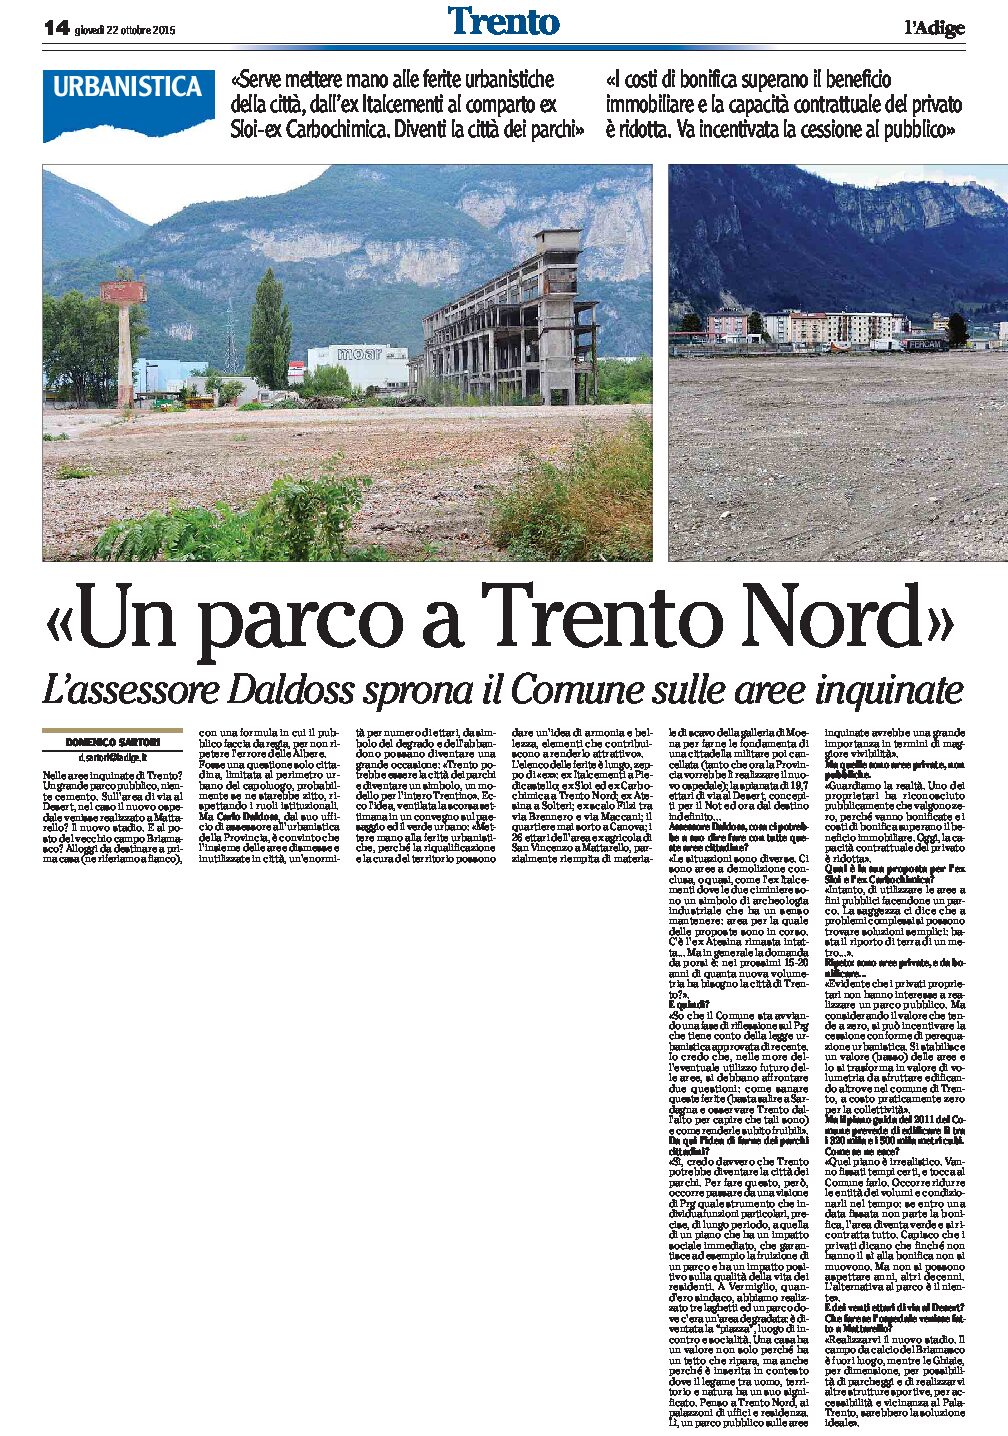 Trento: Daldoss pensa alla “città dei parchi”, modello per tutto il Trentino.